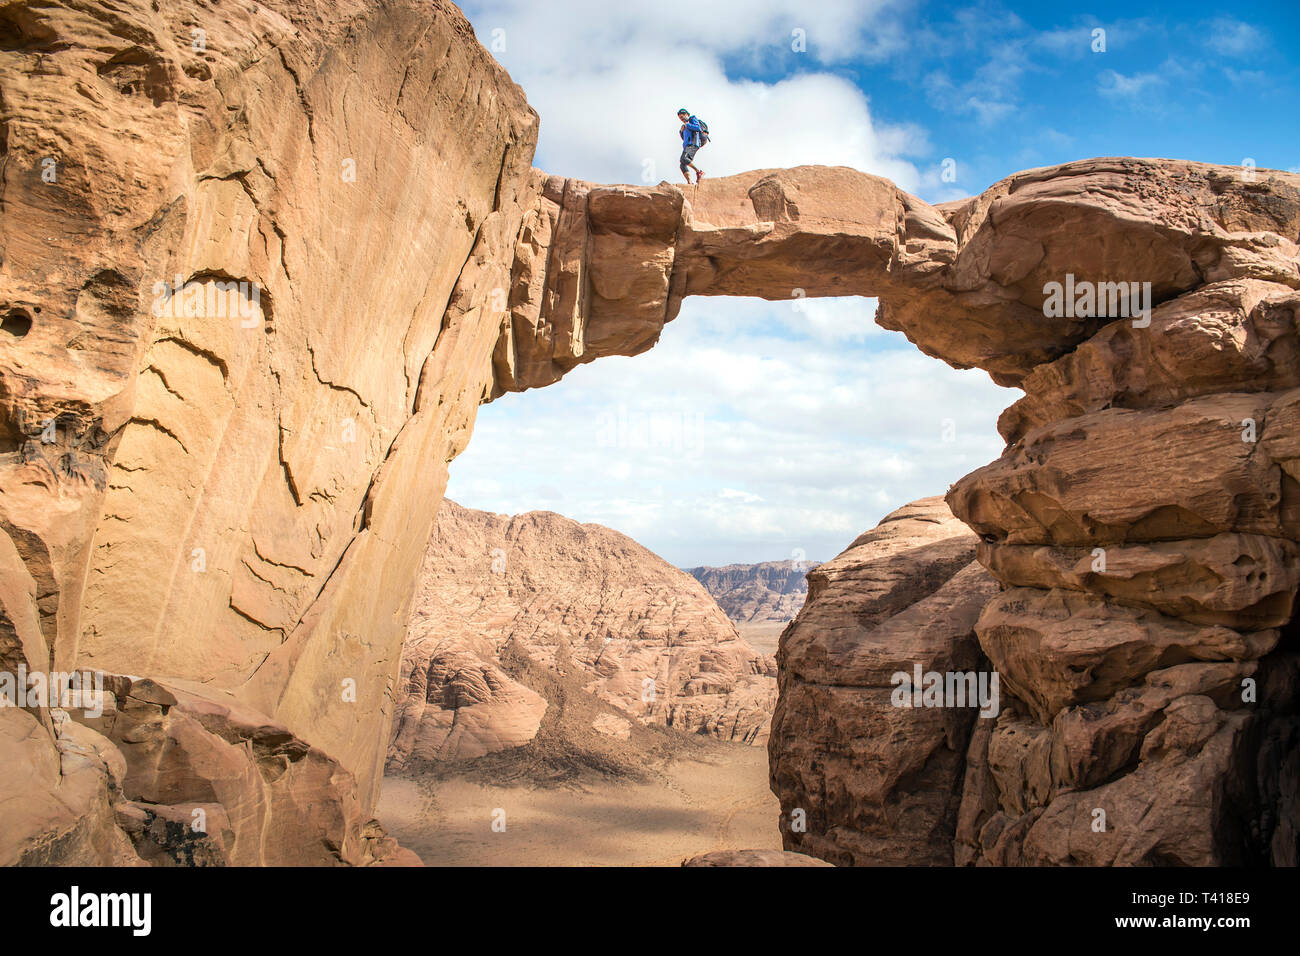 Hombre caminando a través de un puente de piedra, Wadi Rum, Jordania Foto de stock